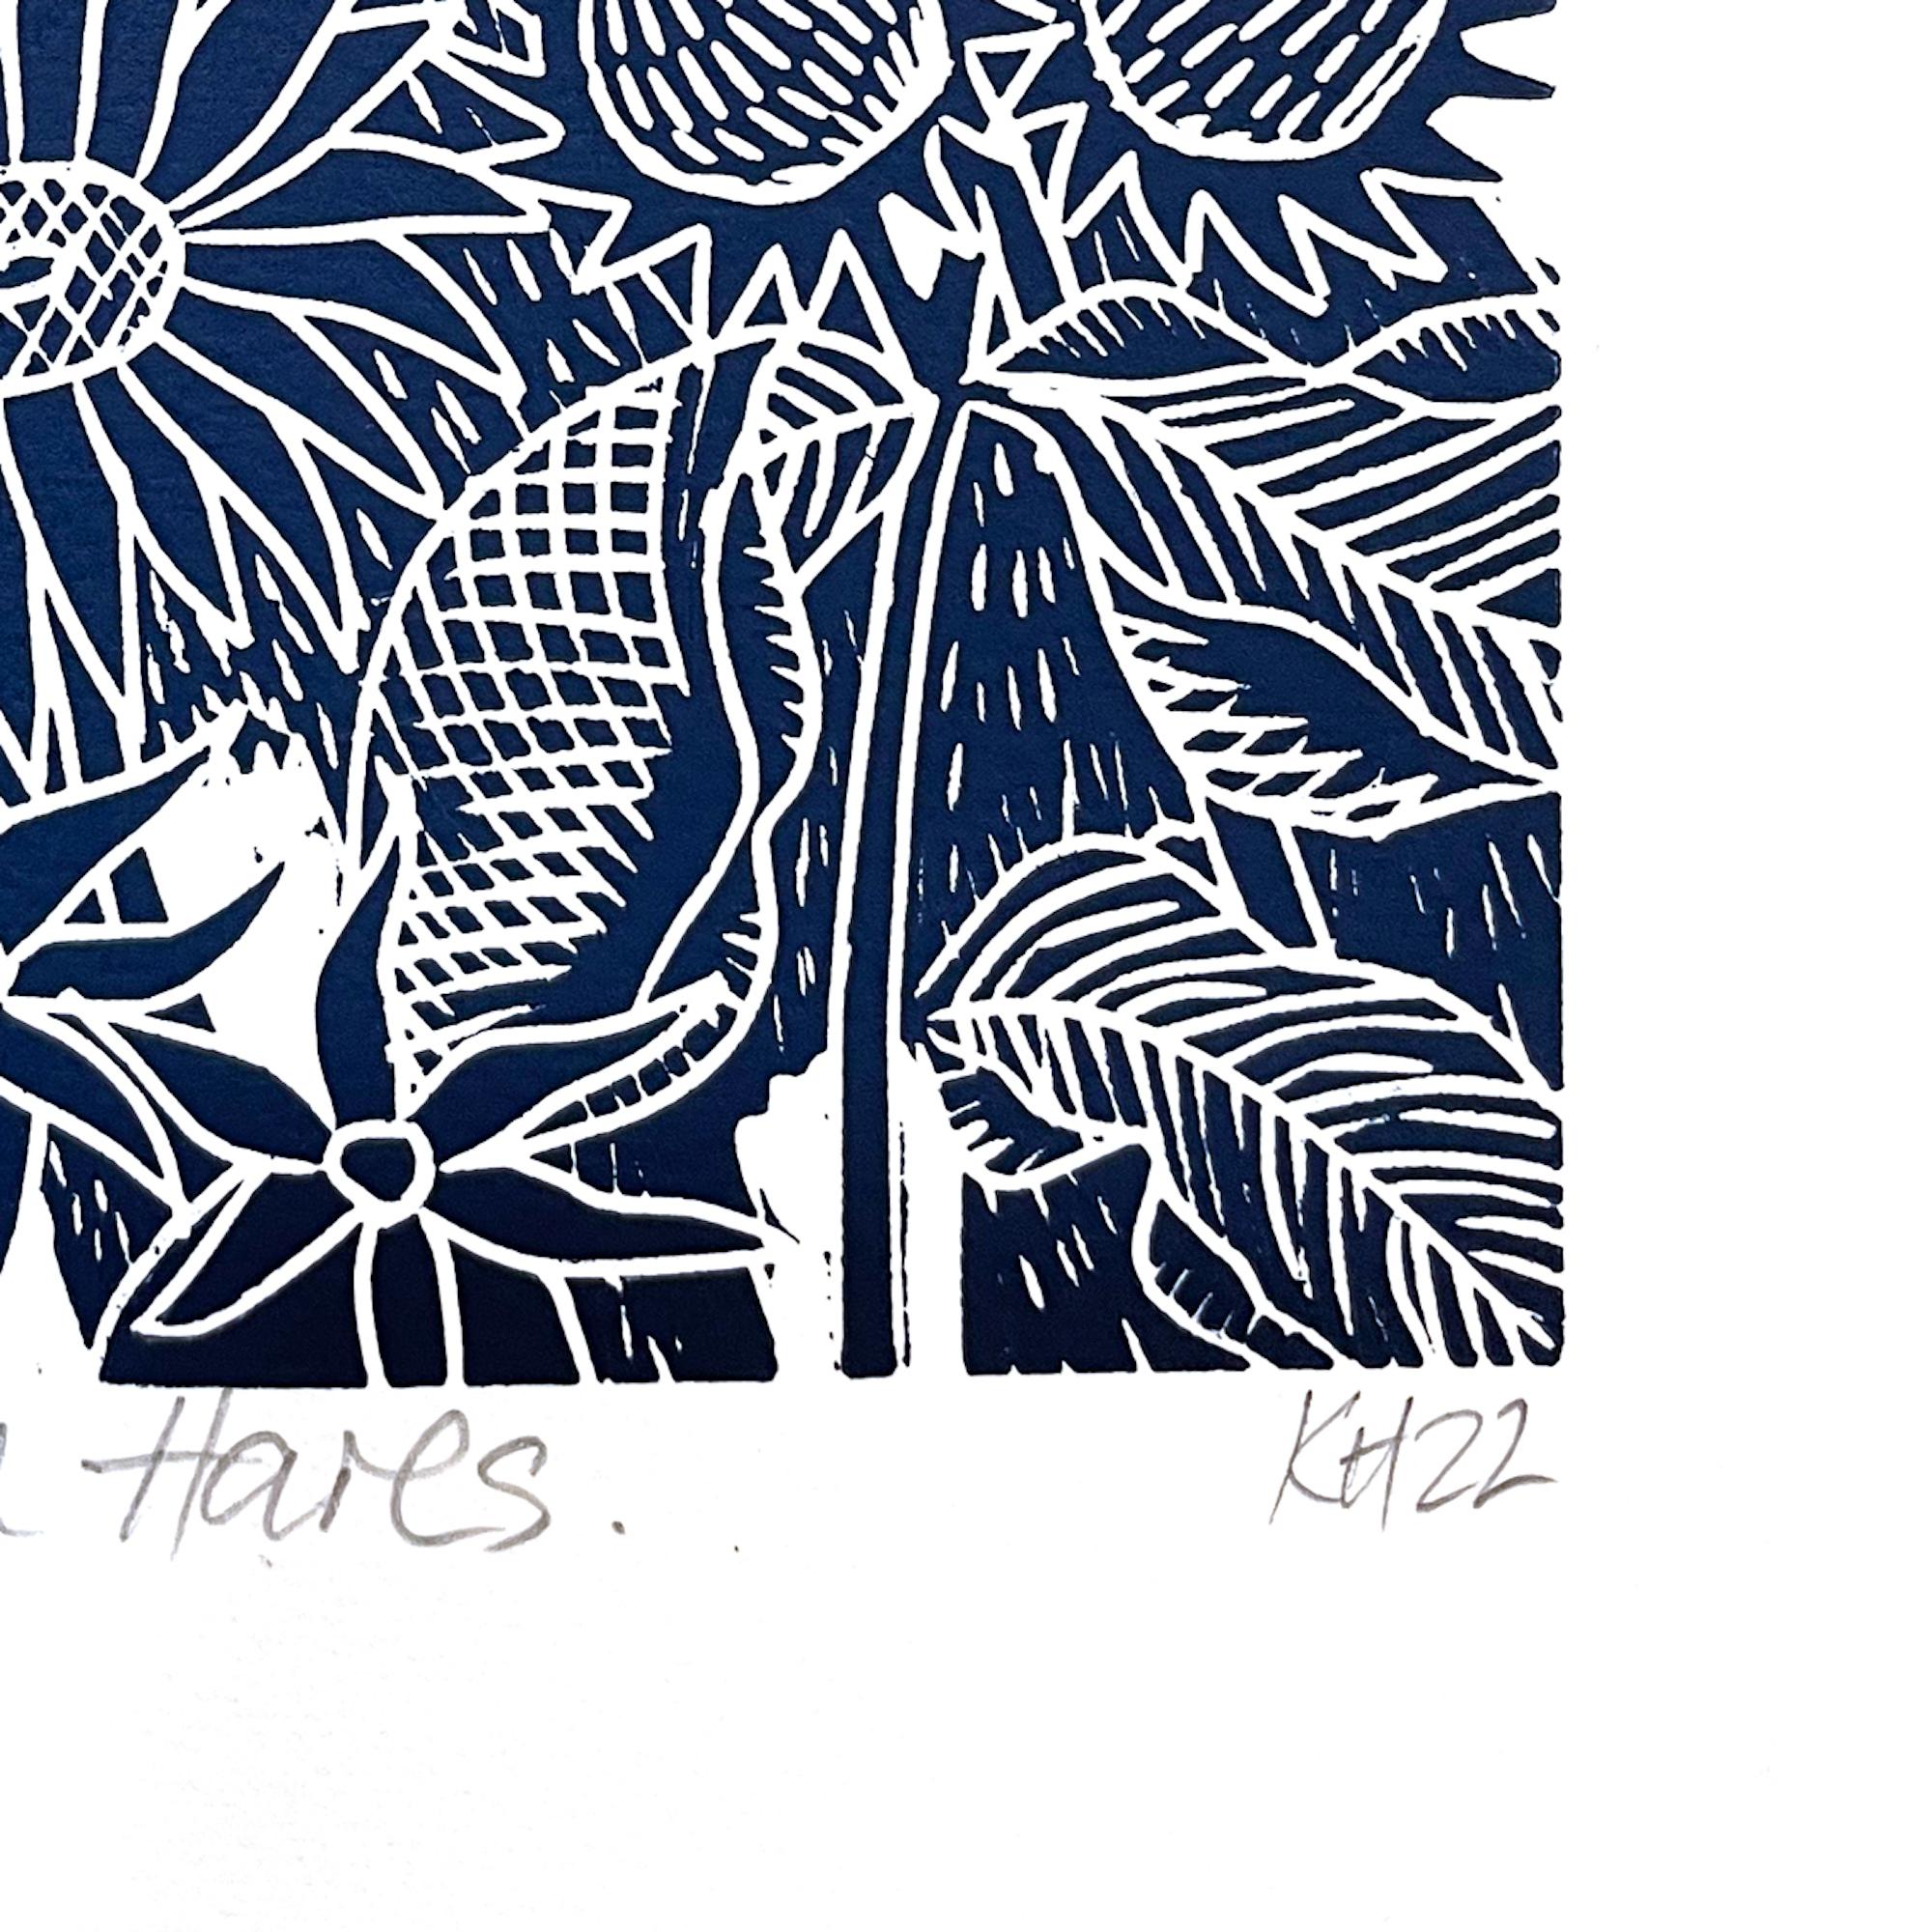 Harvest Moon Hares, Tierkunst, minimalistische Kunstwerke, Linolschnittdruck, Hare-Kunst (Schwarz), Animal Print, von Kate Heiss